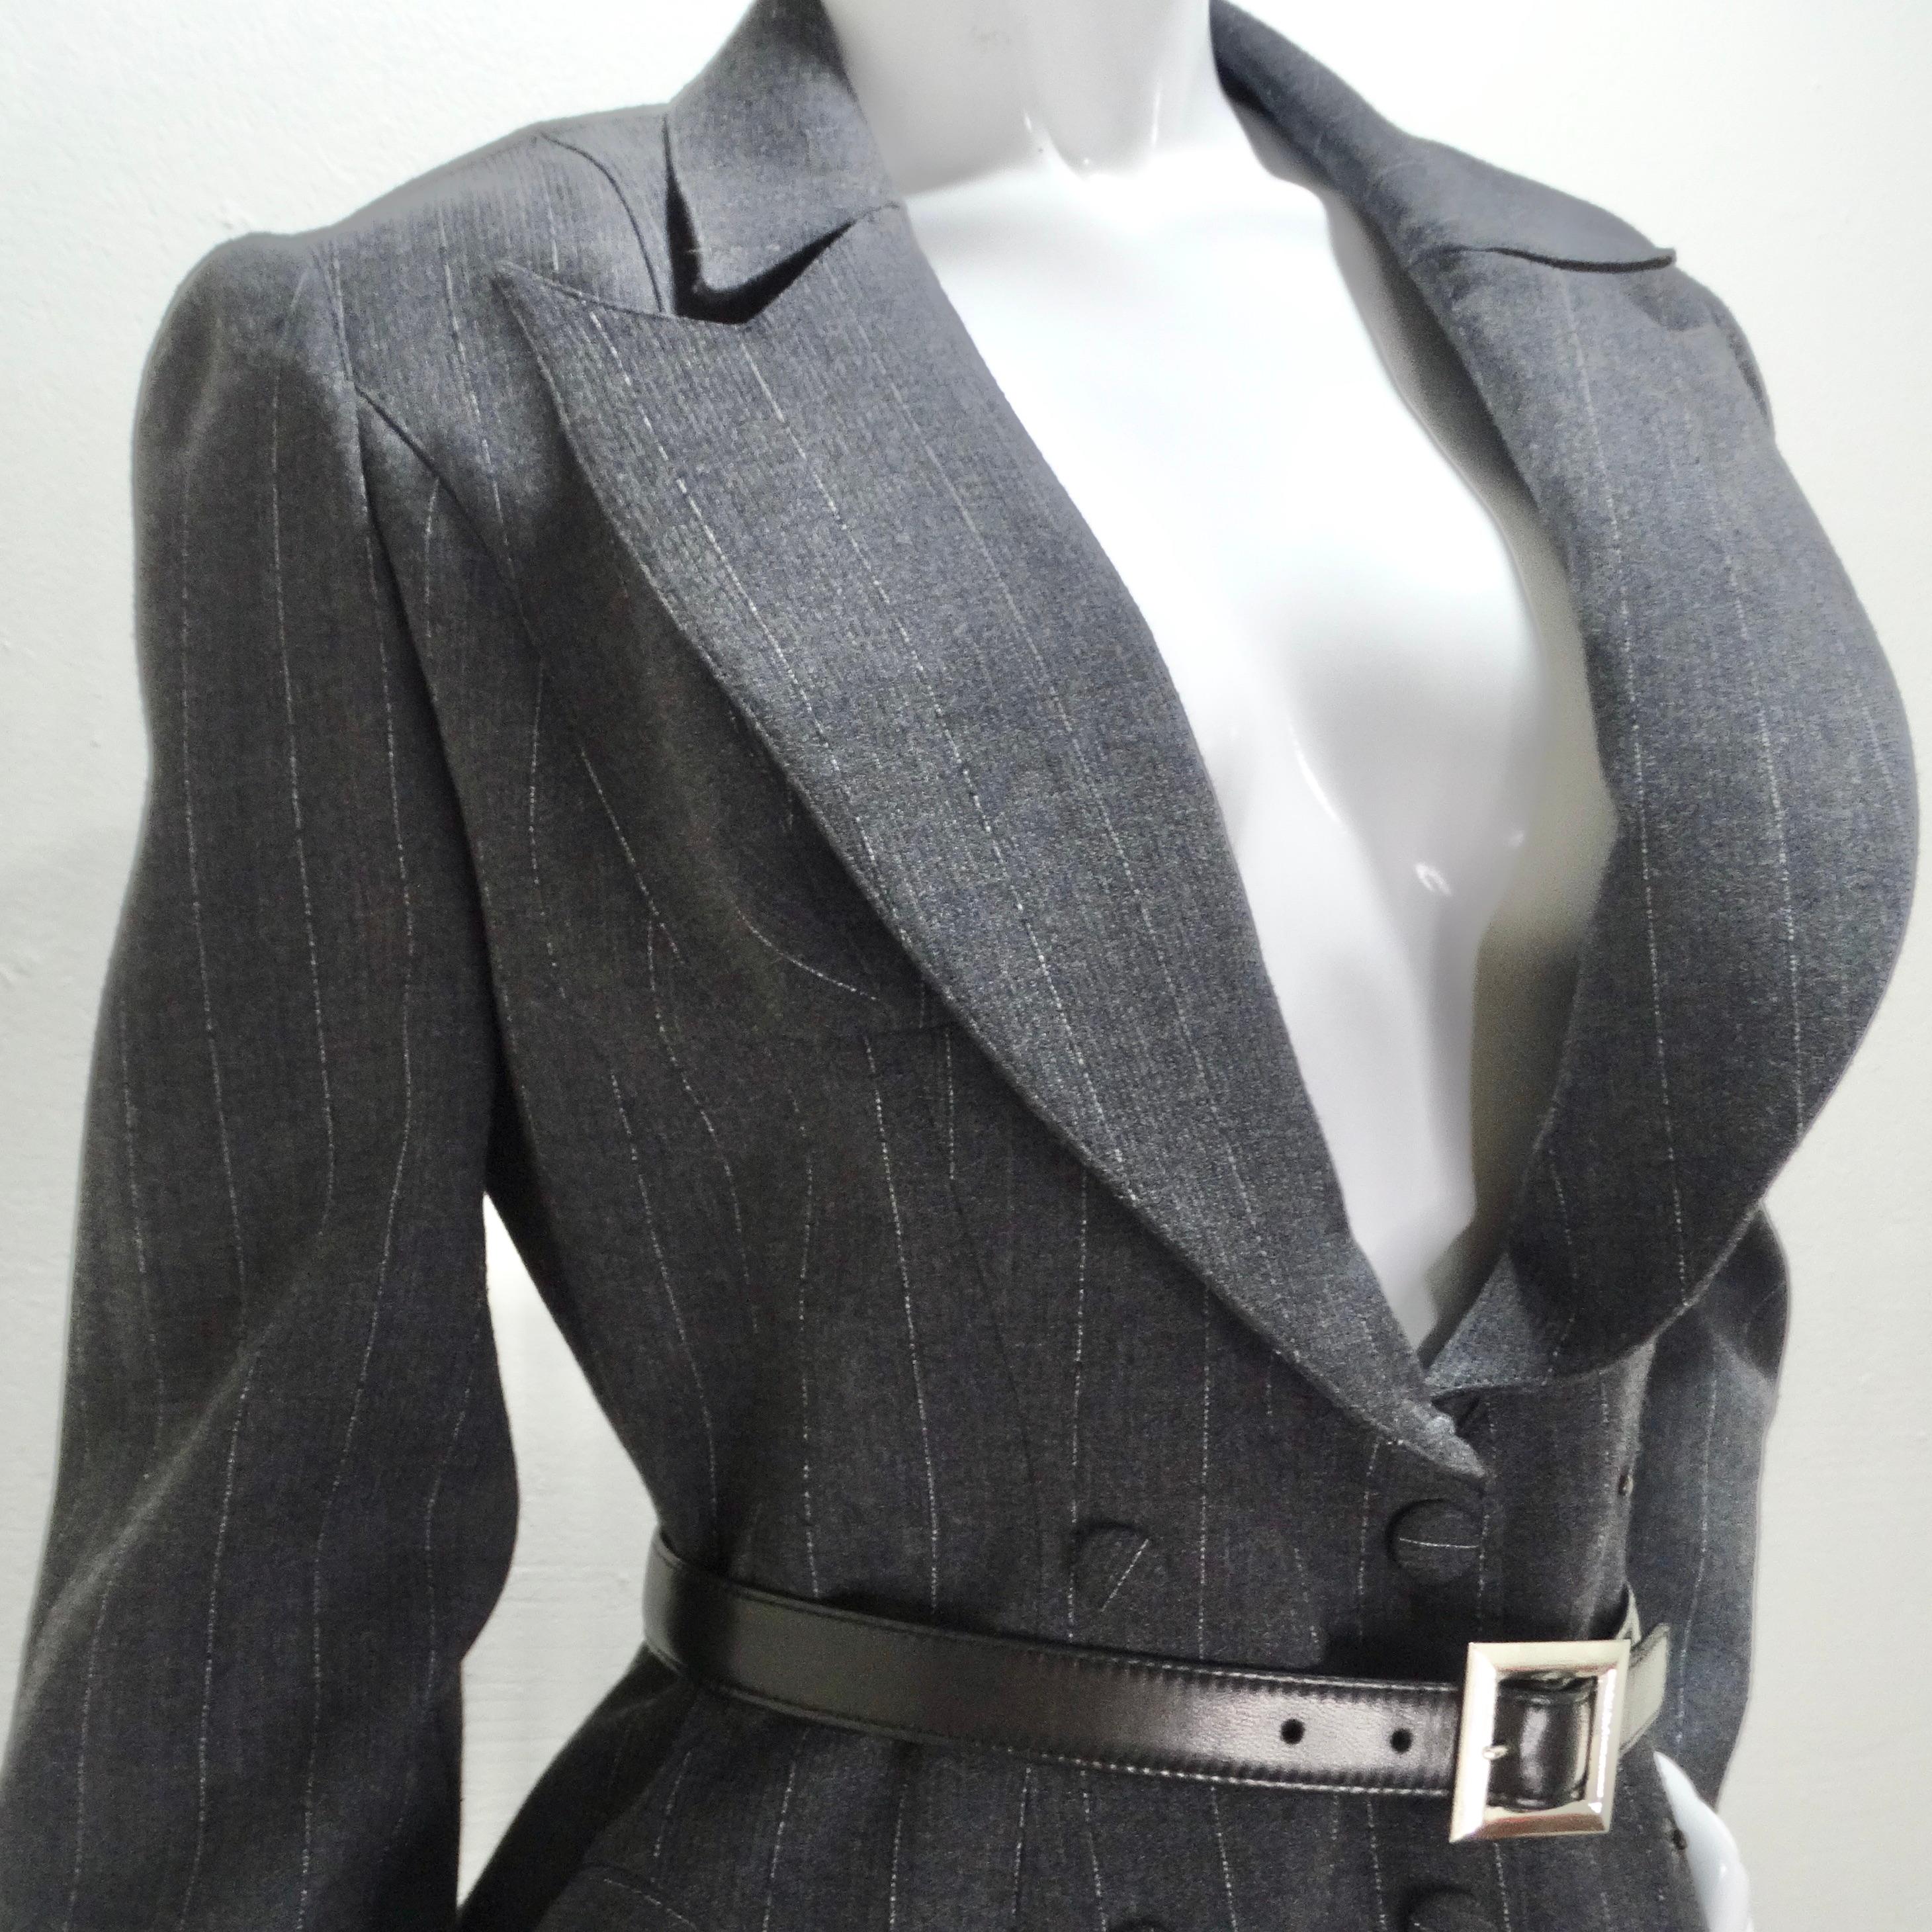 Entrez dans le monde de la haute couture avec notre ensemble blazer, jupe et ceinture Thierry Mugler Couture 1990. Cet ensemble emblématique incarne l'essence de l'esthétique légendaire de Mugler, mariant structure et fantaisie et attirant